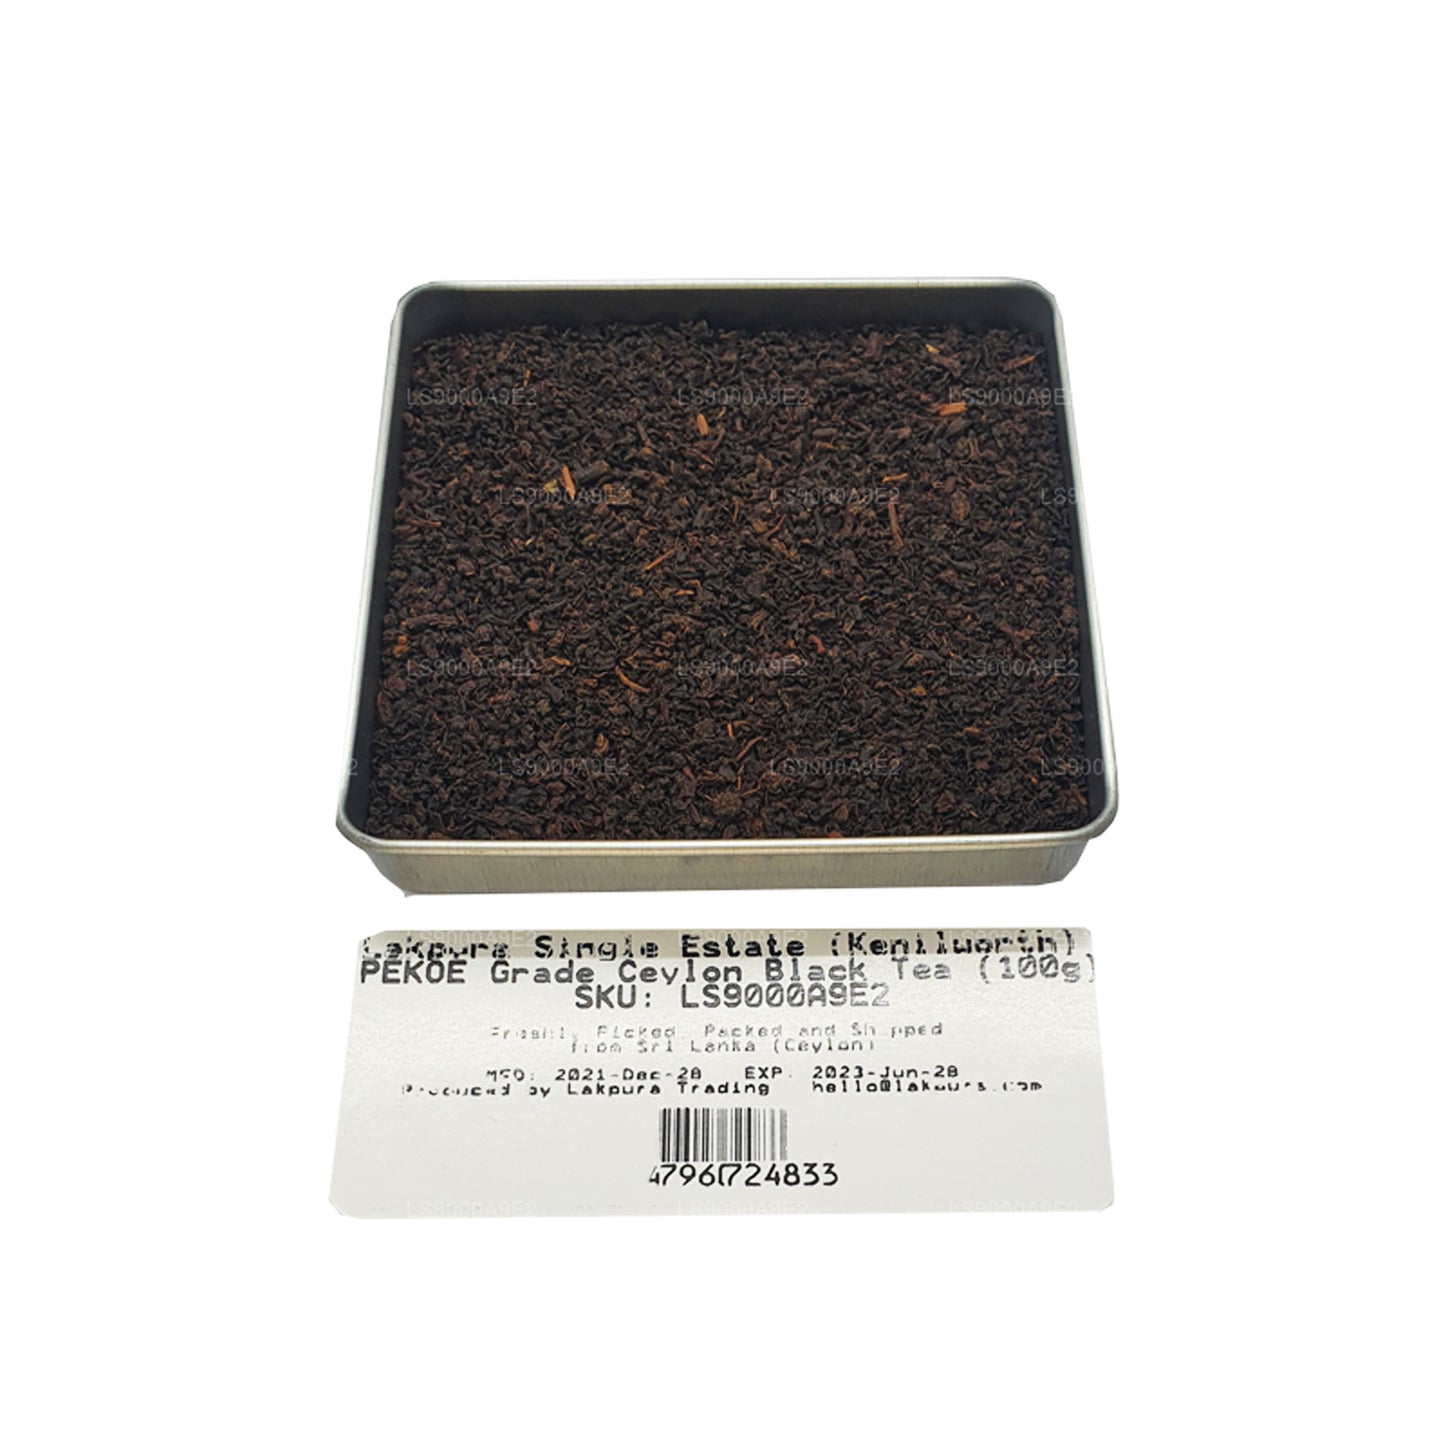 Lakpura Tek Emlak (Kenilworth) PEKOE Sınıfı Seylan Siyah Çay (100g)